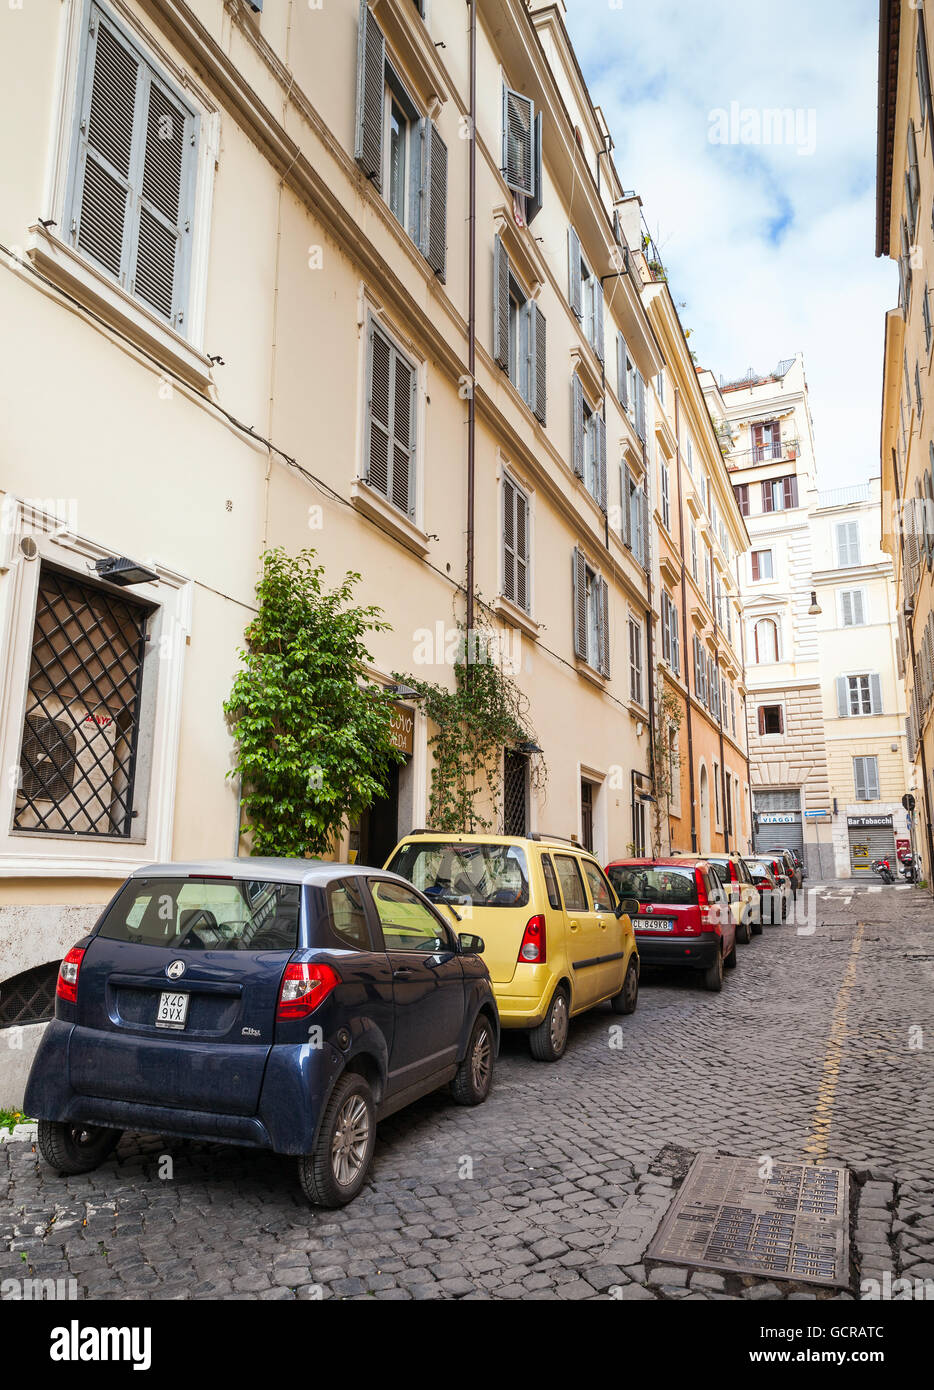 Roma, Italia - 13 Febbraio 2016: strada ordinaria di Roma vecchia con le automobili parcheggiate su una banchina Foto Stock